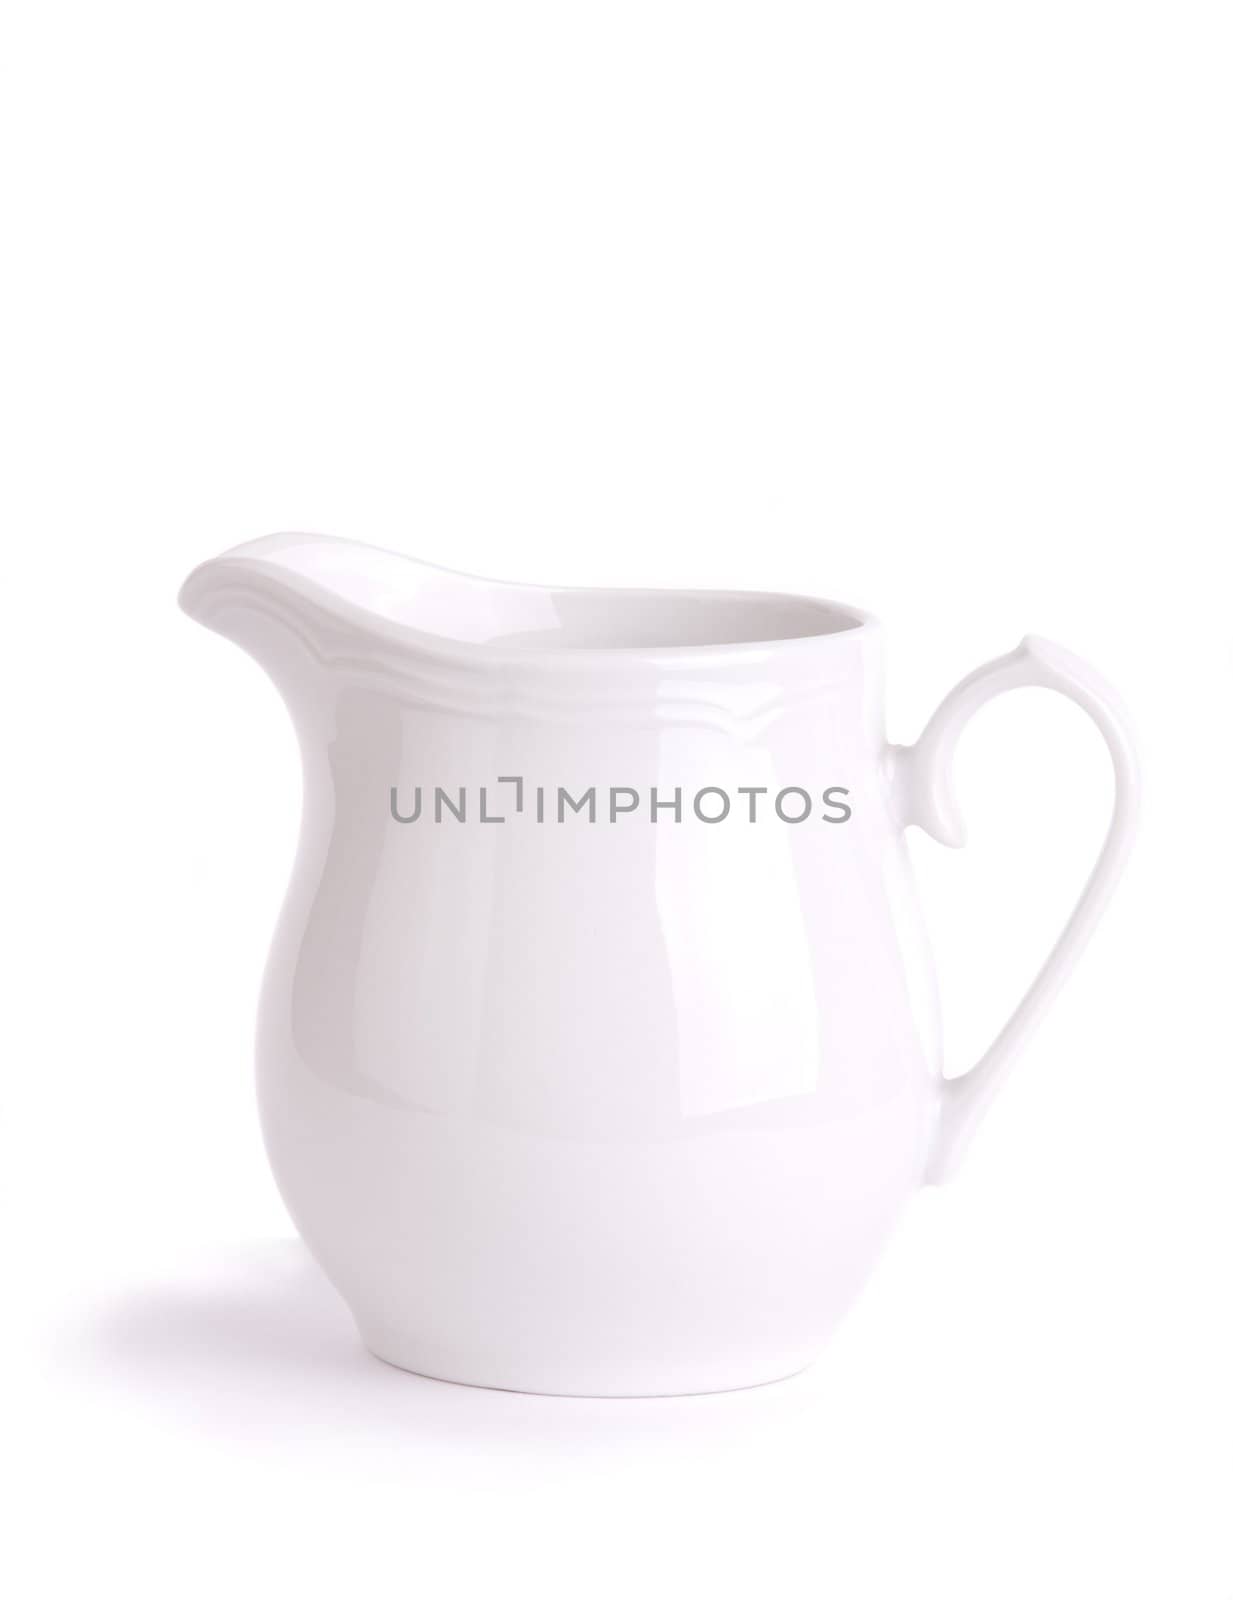 milk jug isolated on white background